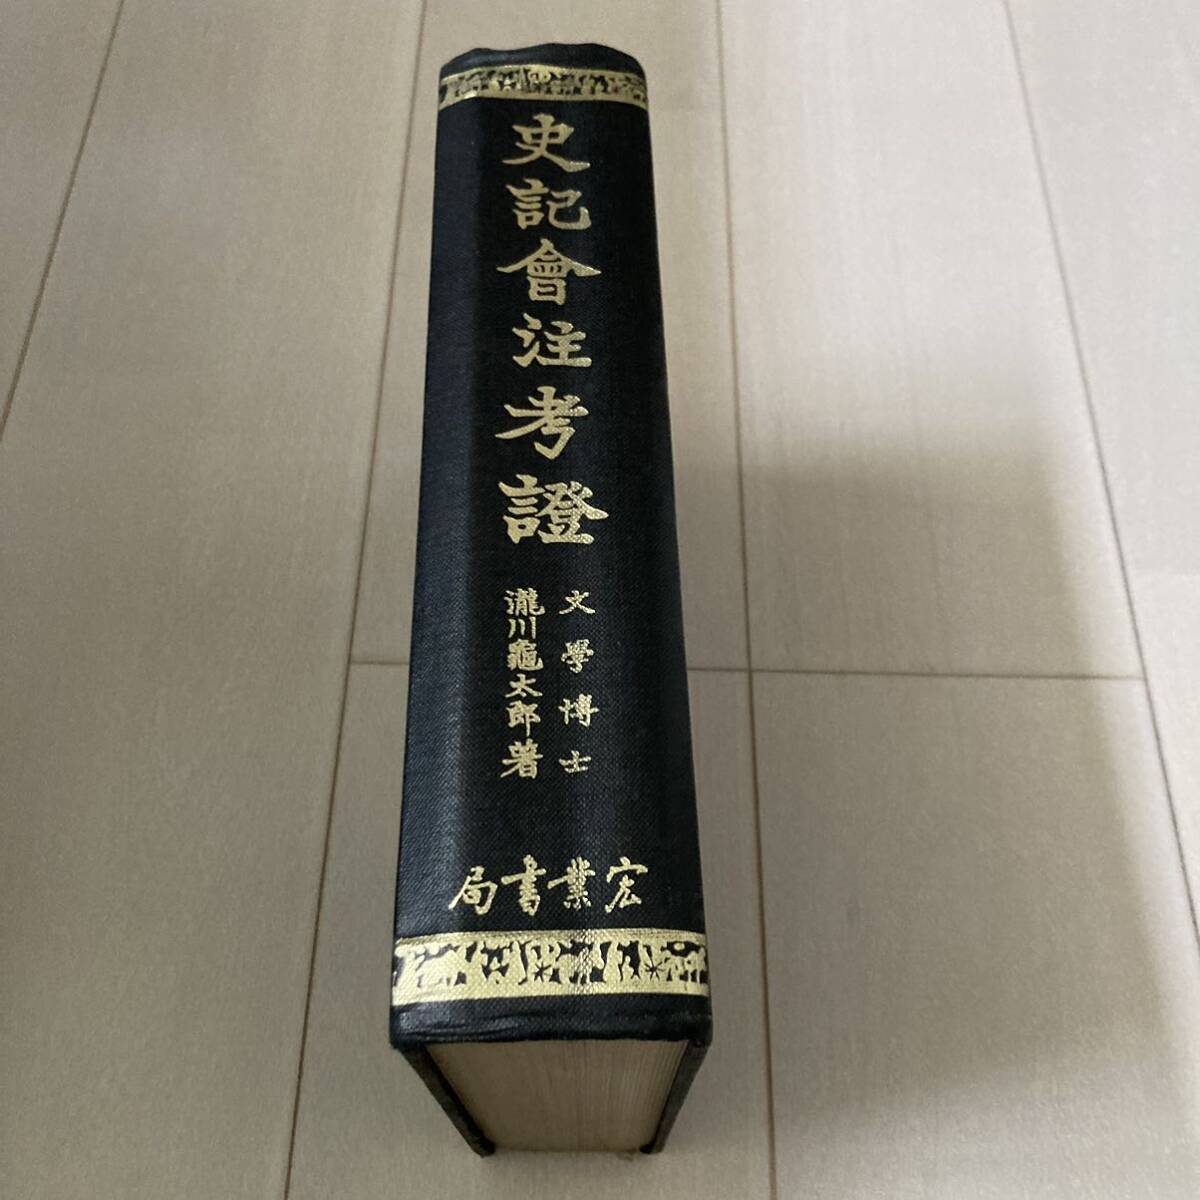 L 中華民国69年発行 中国 唐本 影印版 精装本 「史記會注考證」